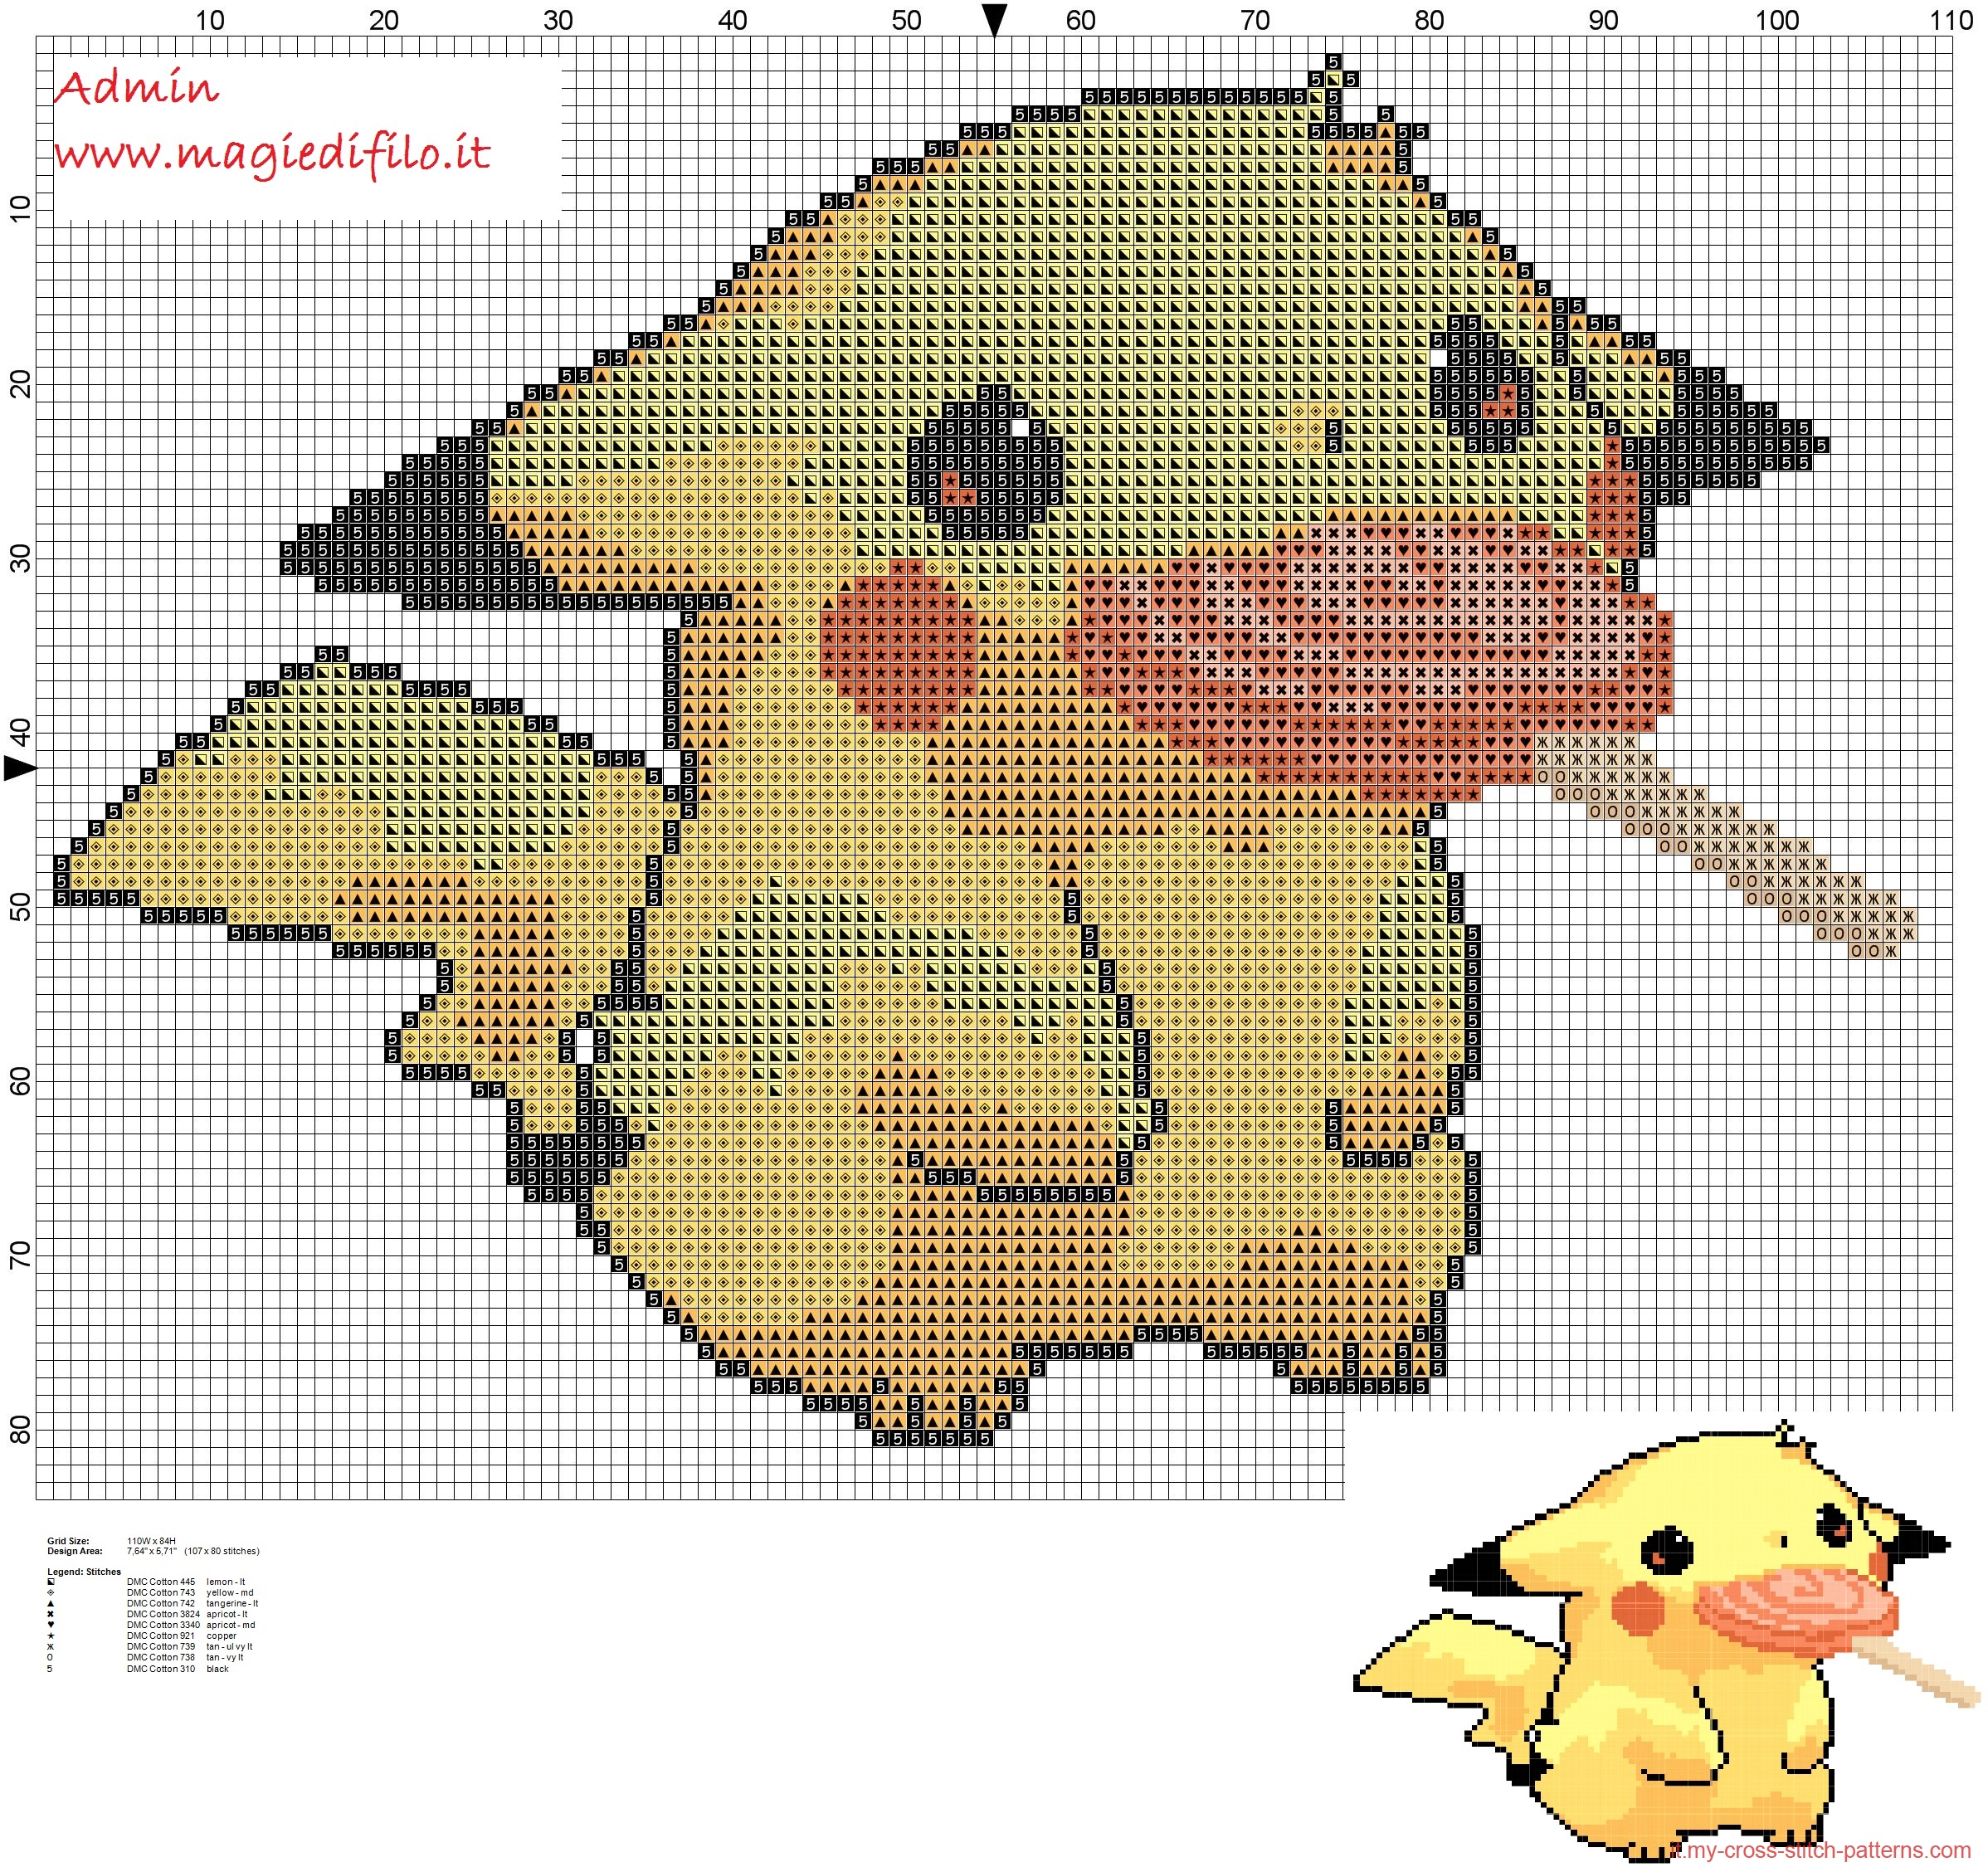 pikachu_pokemon_025_prima_generazione